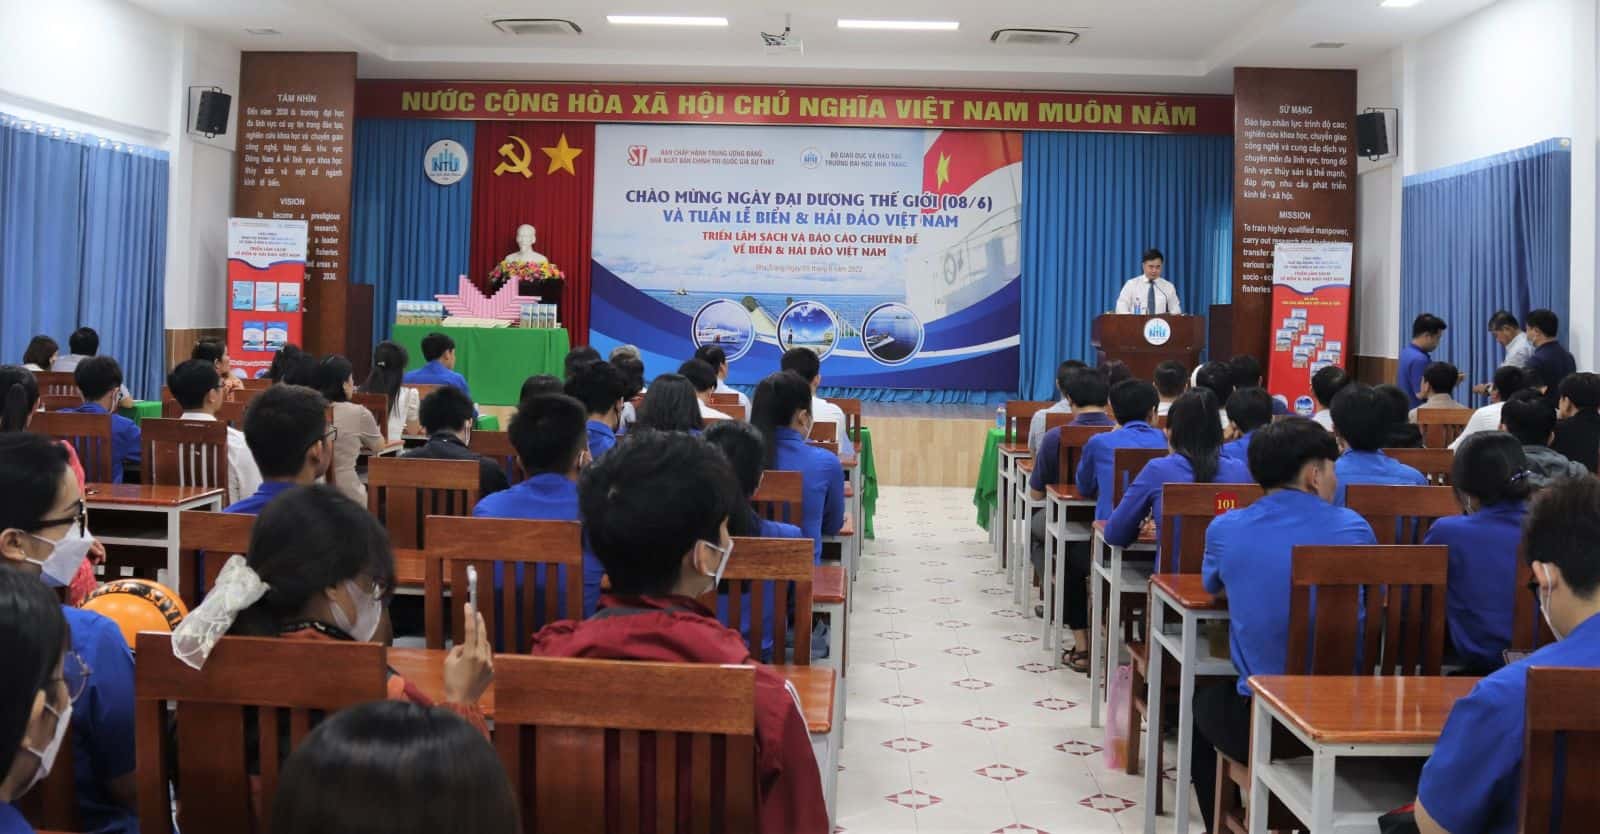 Triển lãm sách và Báo cáo chuyên đề về biển và hải đảo Việt Nam